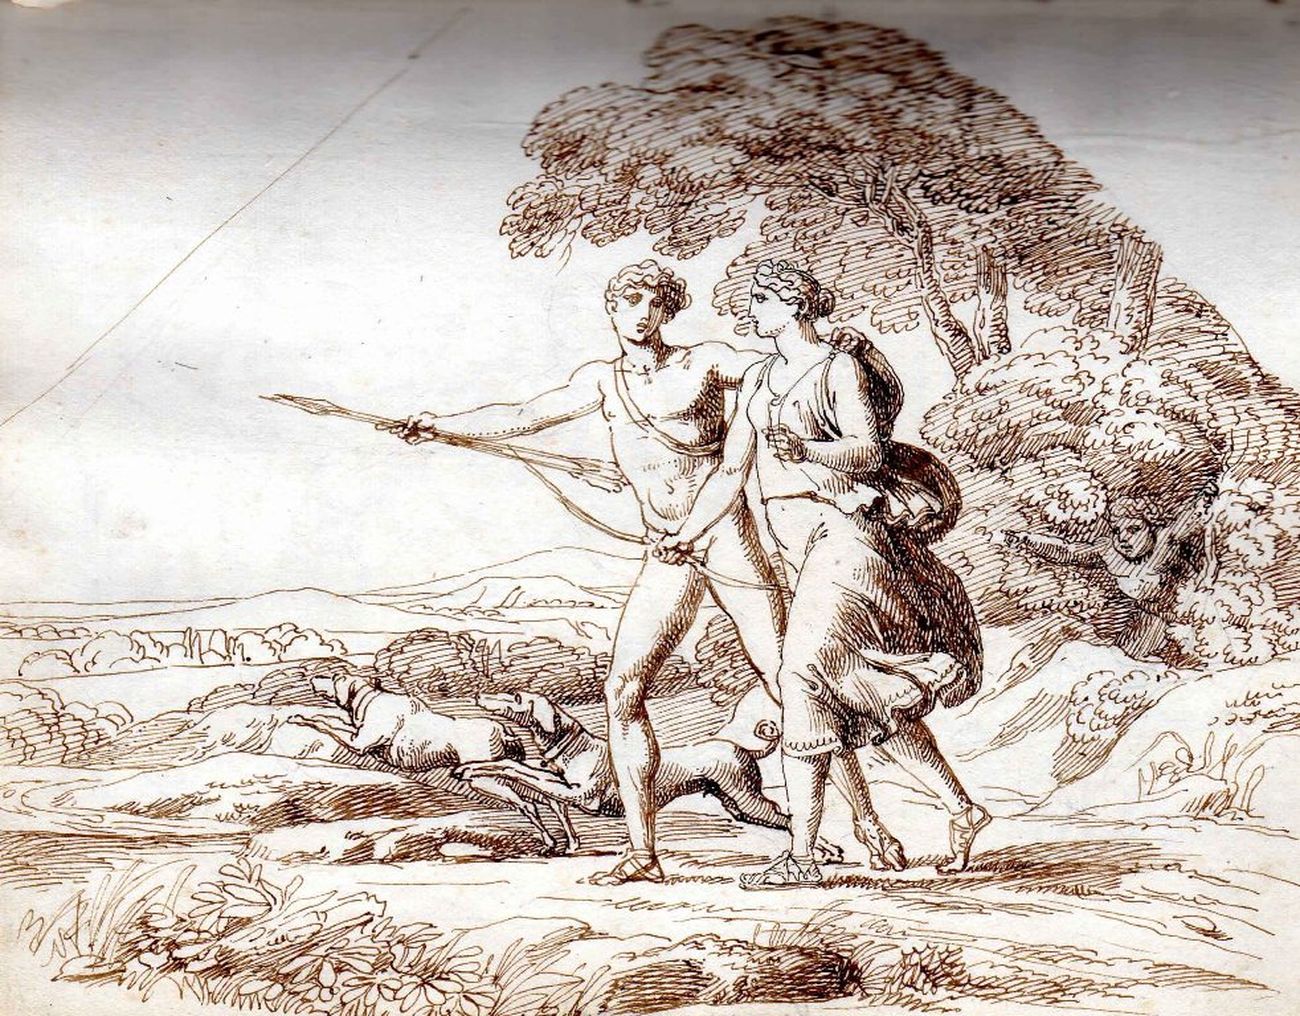 Pelagio Palagi, Venere e Adone a caccia, collezione privata, inchiostro di china e matita su carta